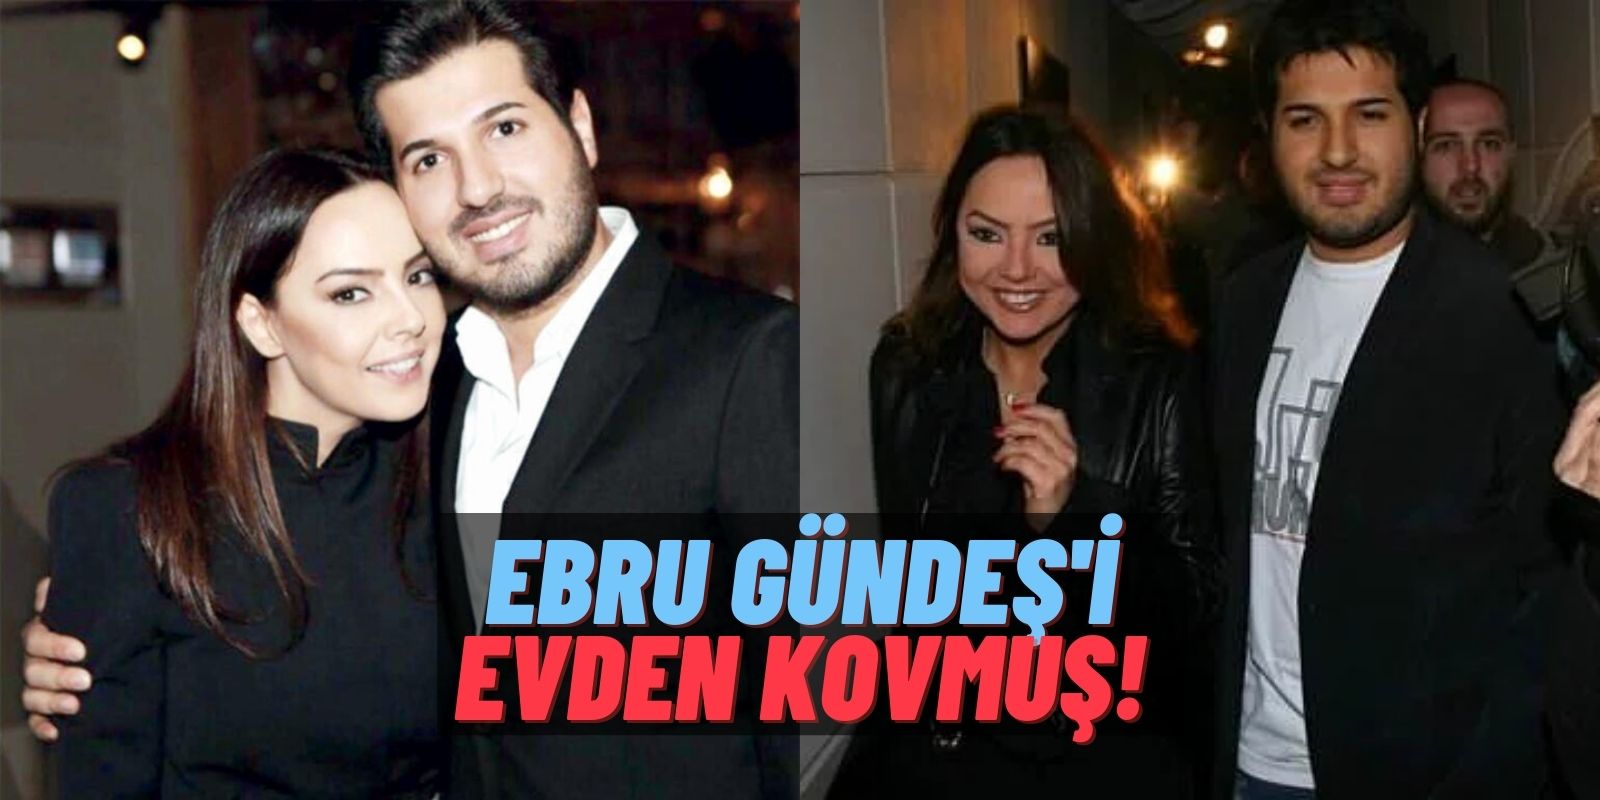 Ebru Gündeş’in Mahkemeye Sunduğu Boşanma Dilekçesi İfşalandı Ortalık Karıştı! Otelde Kalmışlar: “Umrumda Değilsin!”